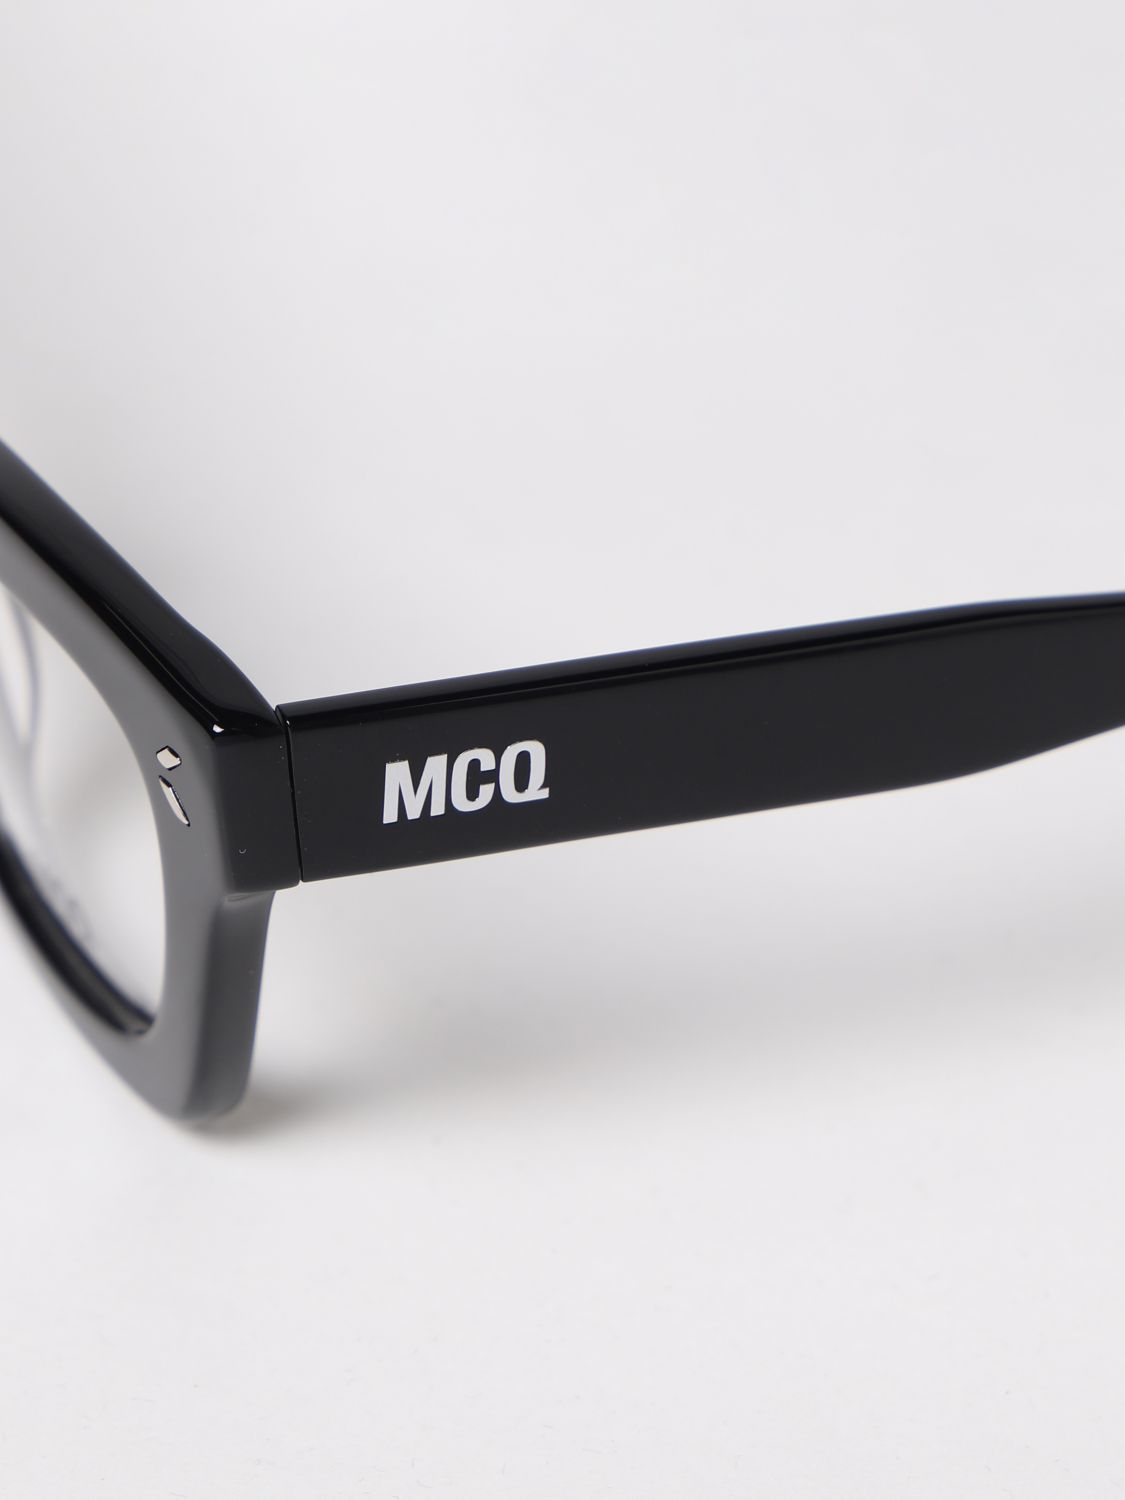 Sunglasses Mcq: Mcq sunglasses for woman black 4